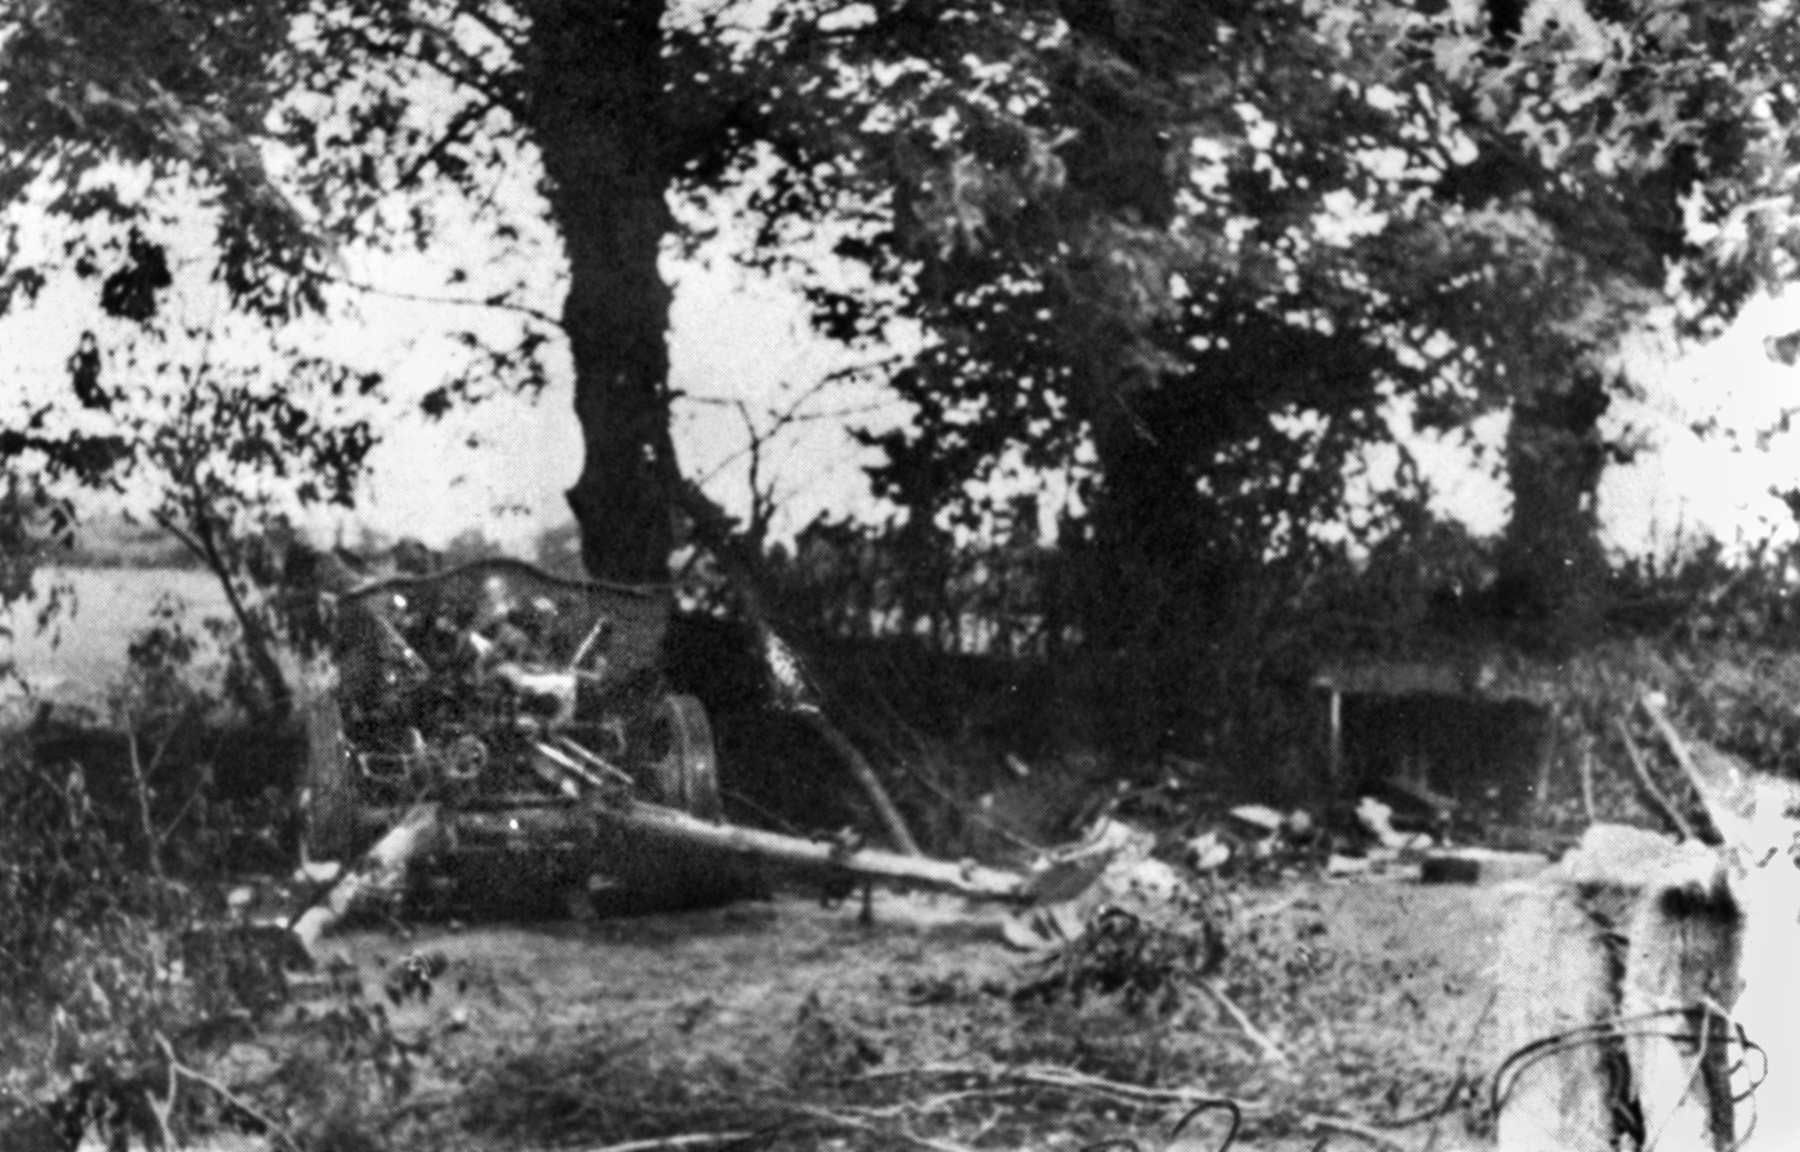 被Easy连击毁的一门德国火炮。马拉基在那里试图取回一把德国鲁格手枪，差点丢了性命。